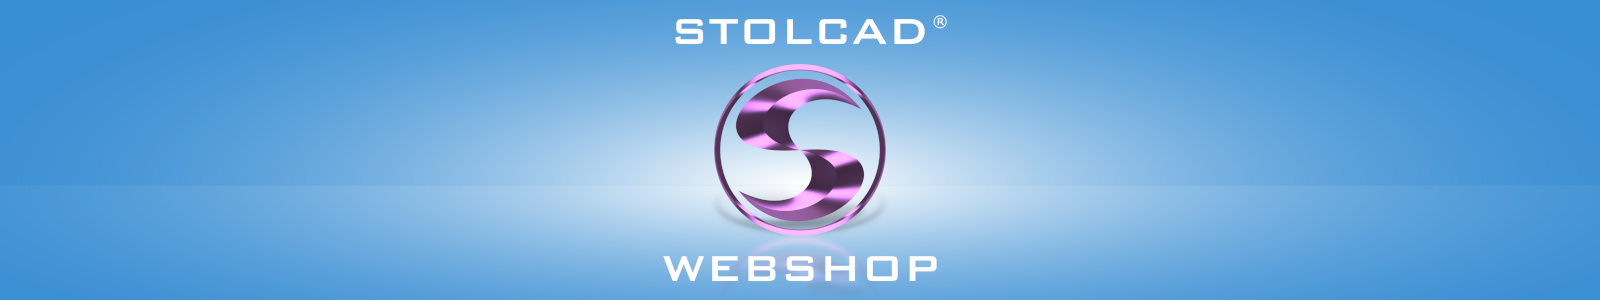 Stolcad Webshop - witryna dla handlowców do wyceny okien, drzwi i rolet